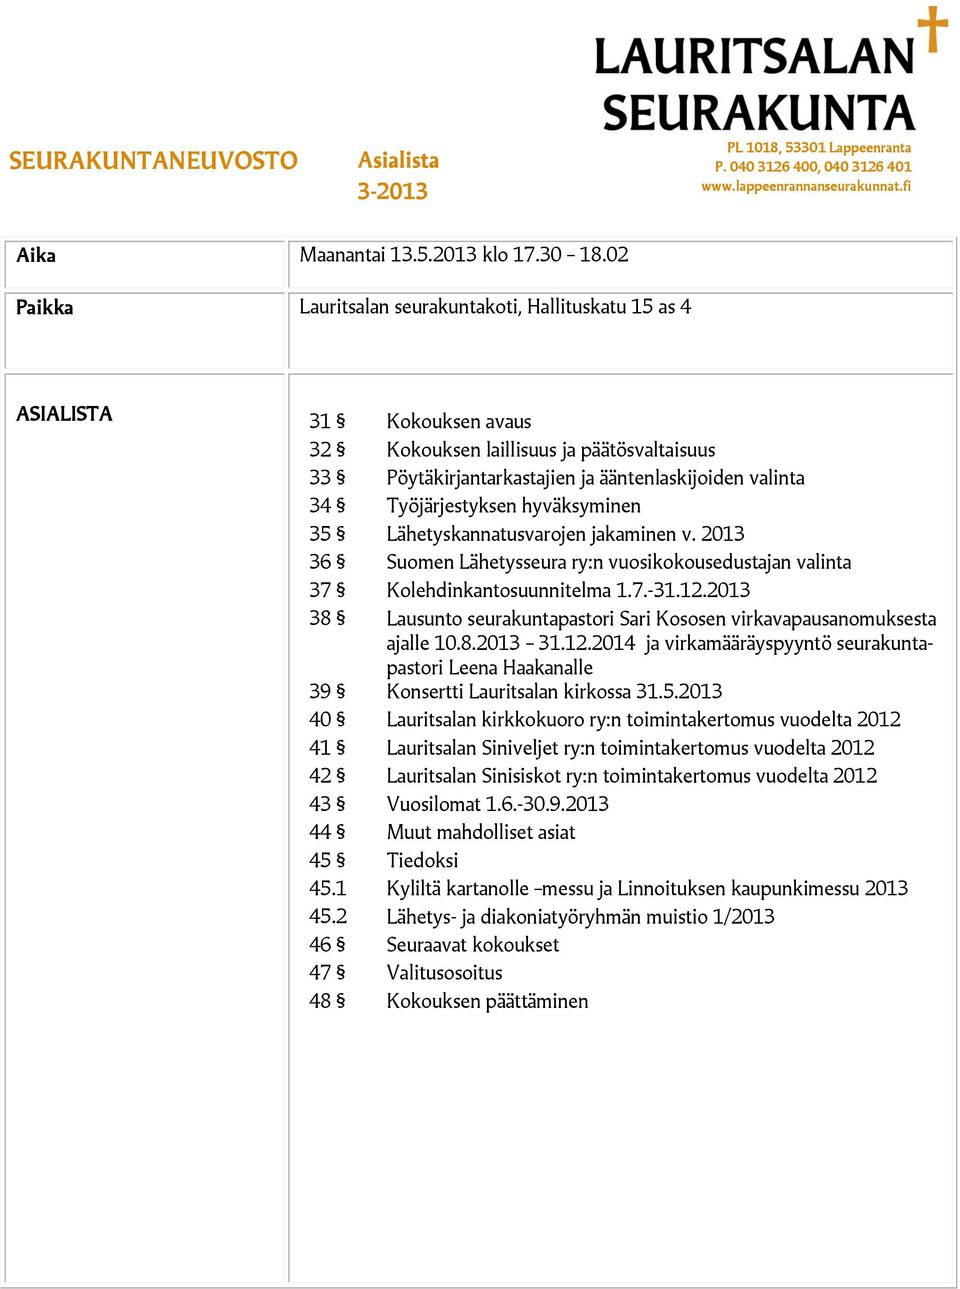 Työjärjestyksen hyväksyminen 35 Lähetyskannatusvarojen jakaminen v. 2013 36 Suomen Lähetysseura ry:n vuosikokousedustajan valinta 37 Kolehdinkantosuunnitelma 1.7.-31.12.